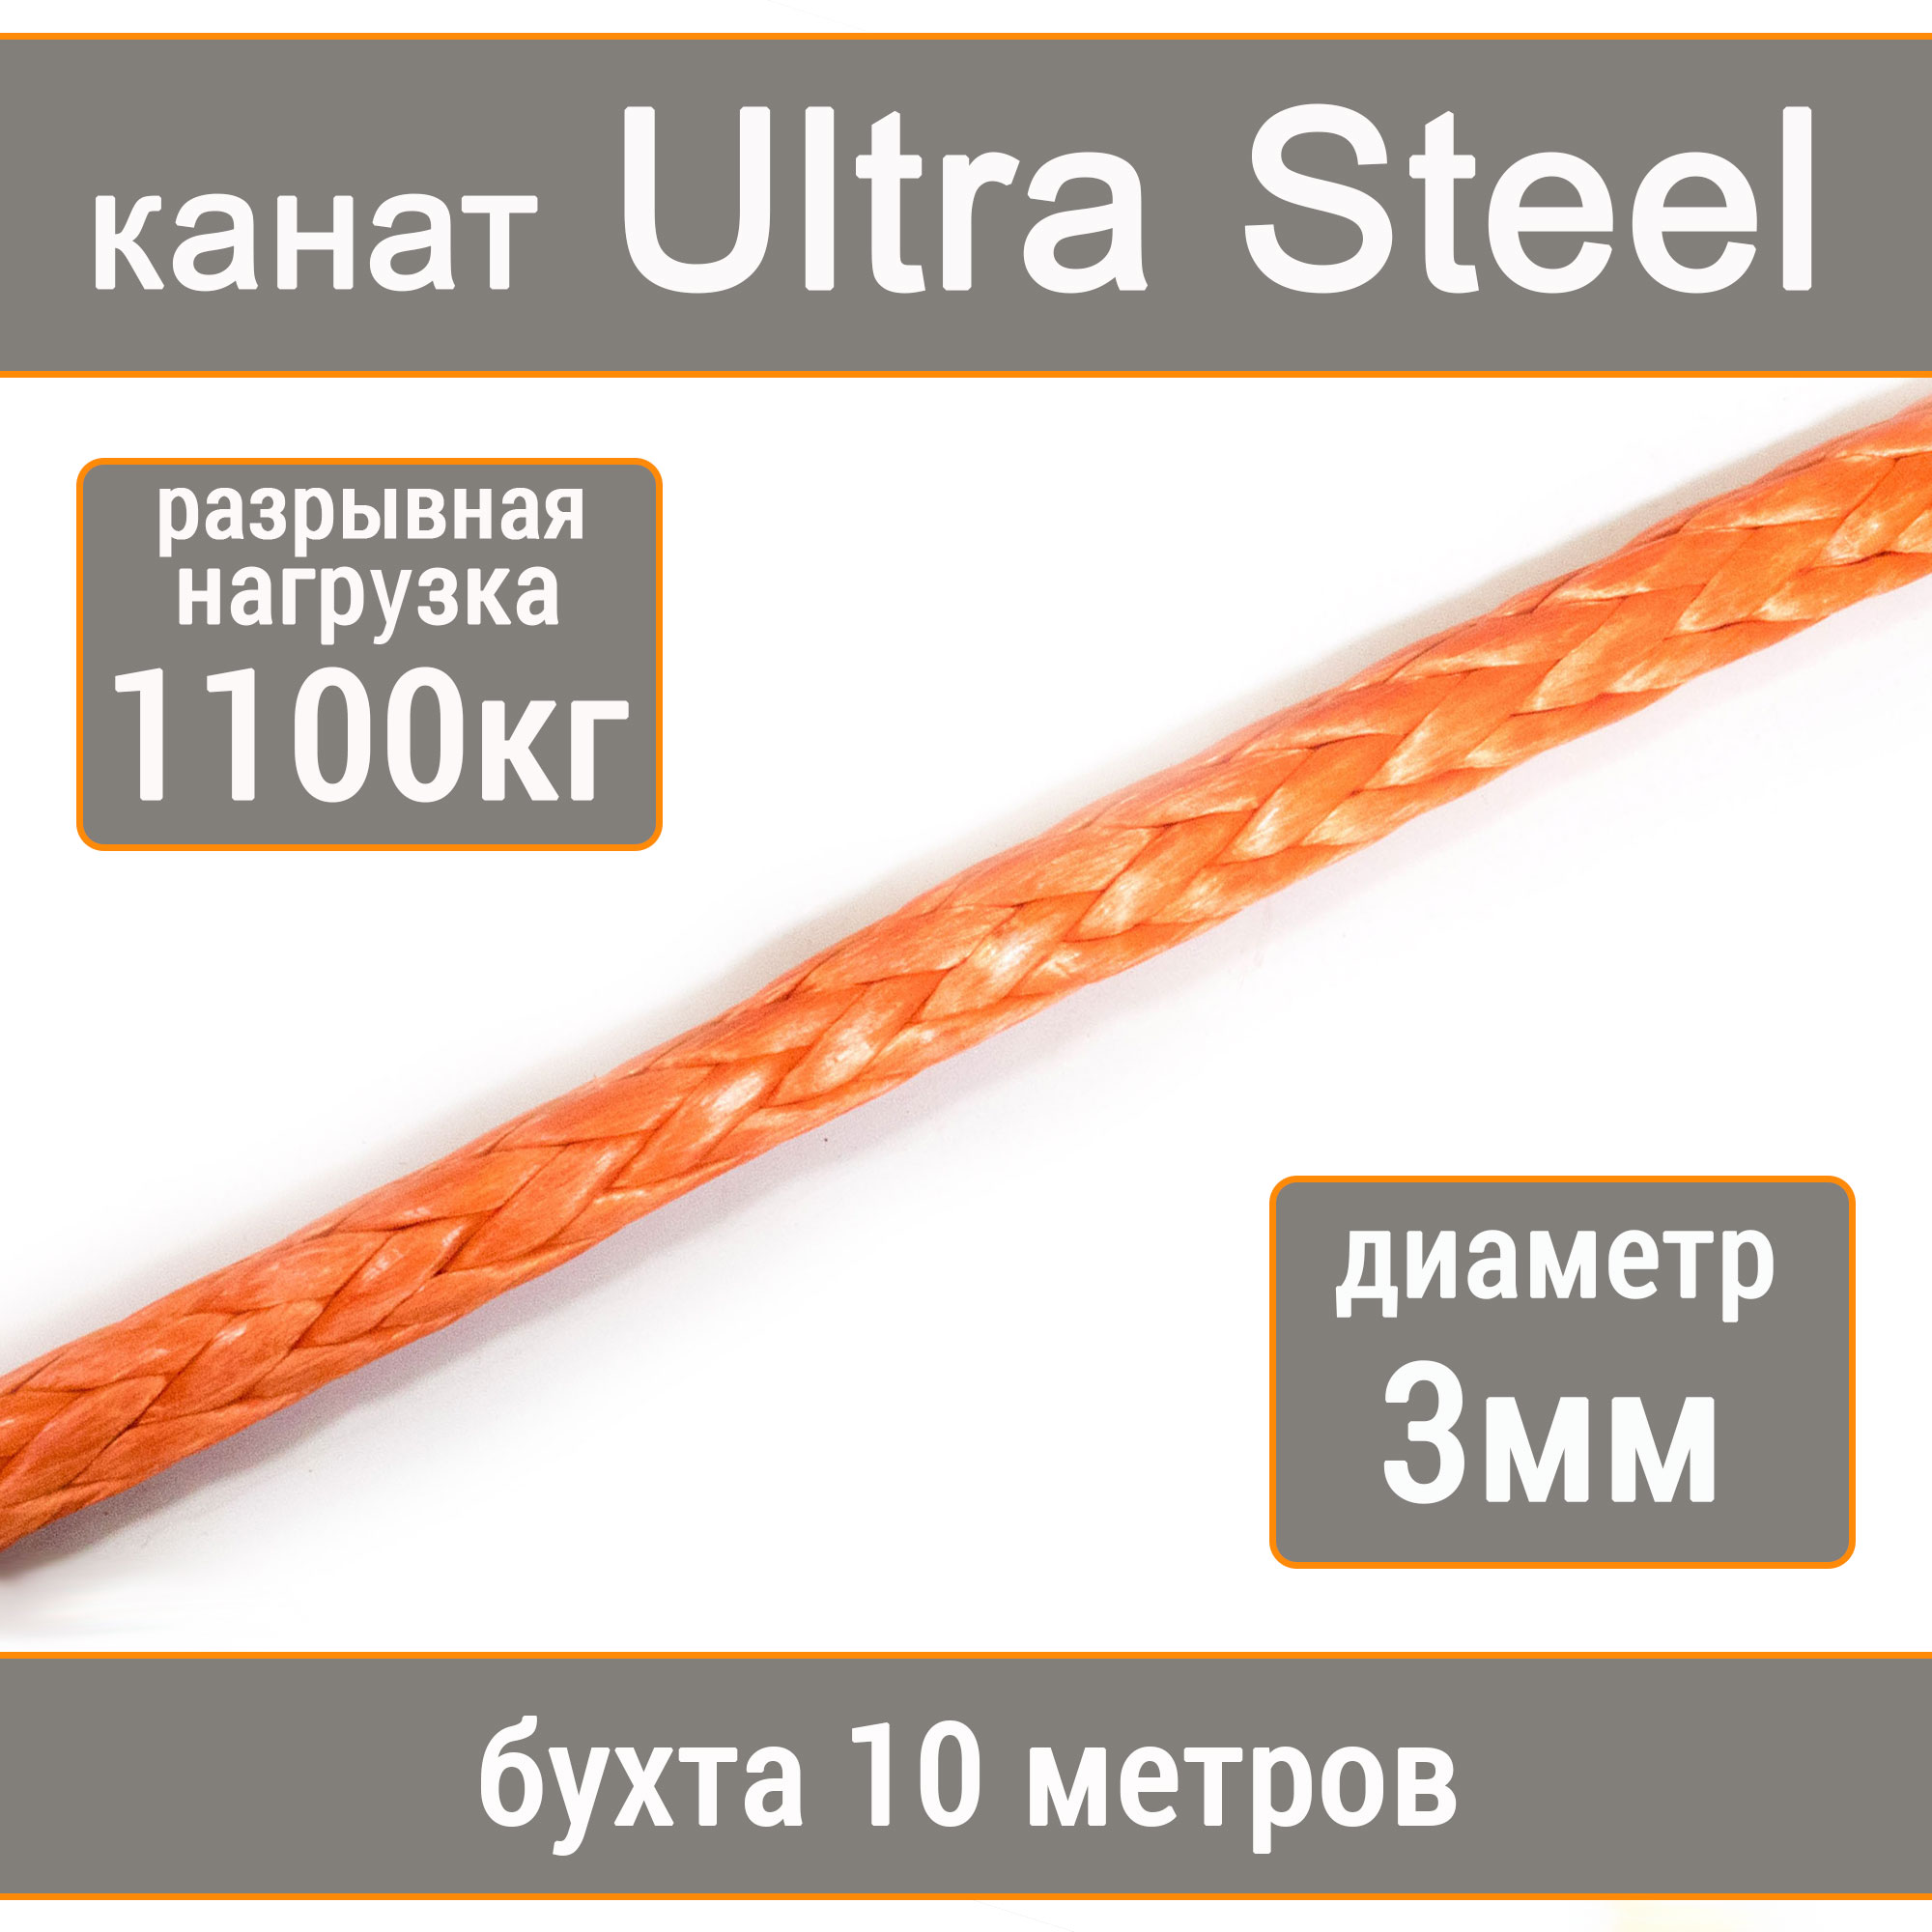 Высокопрочный синтетический канат UTX Ultra Steel 3мм р.н.1100кг, 007654321-103 манильский канат щит мт d 8 мм на кат 200 мм 160 м 66879